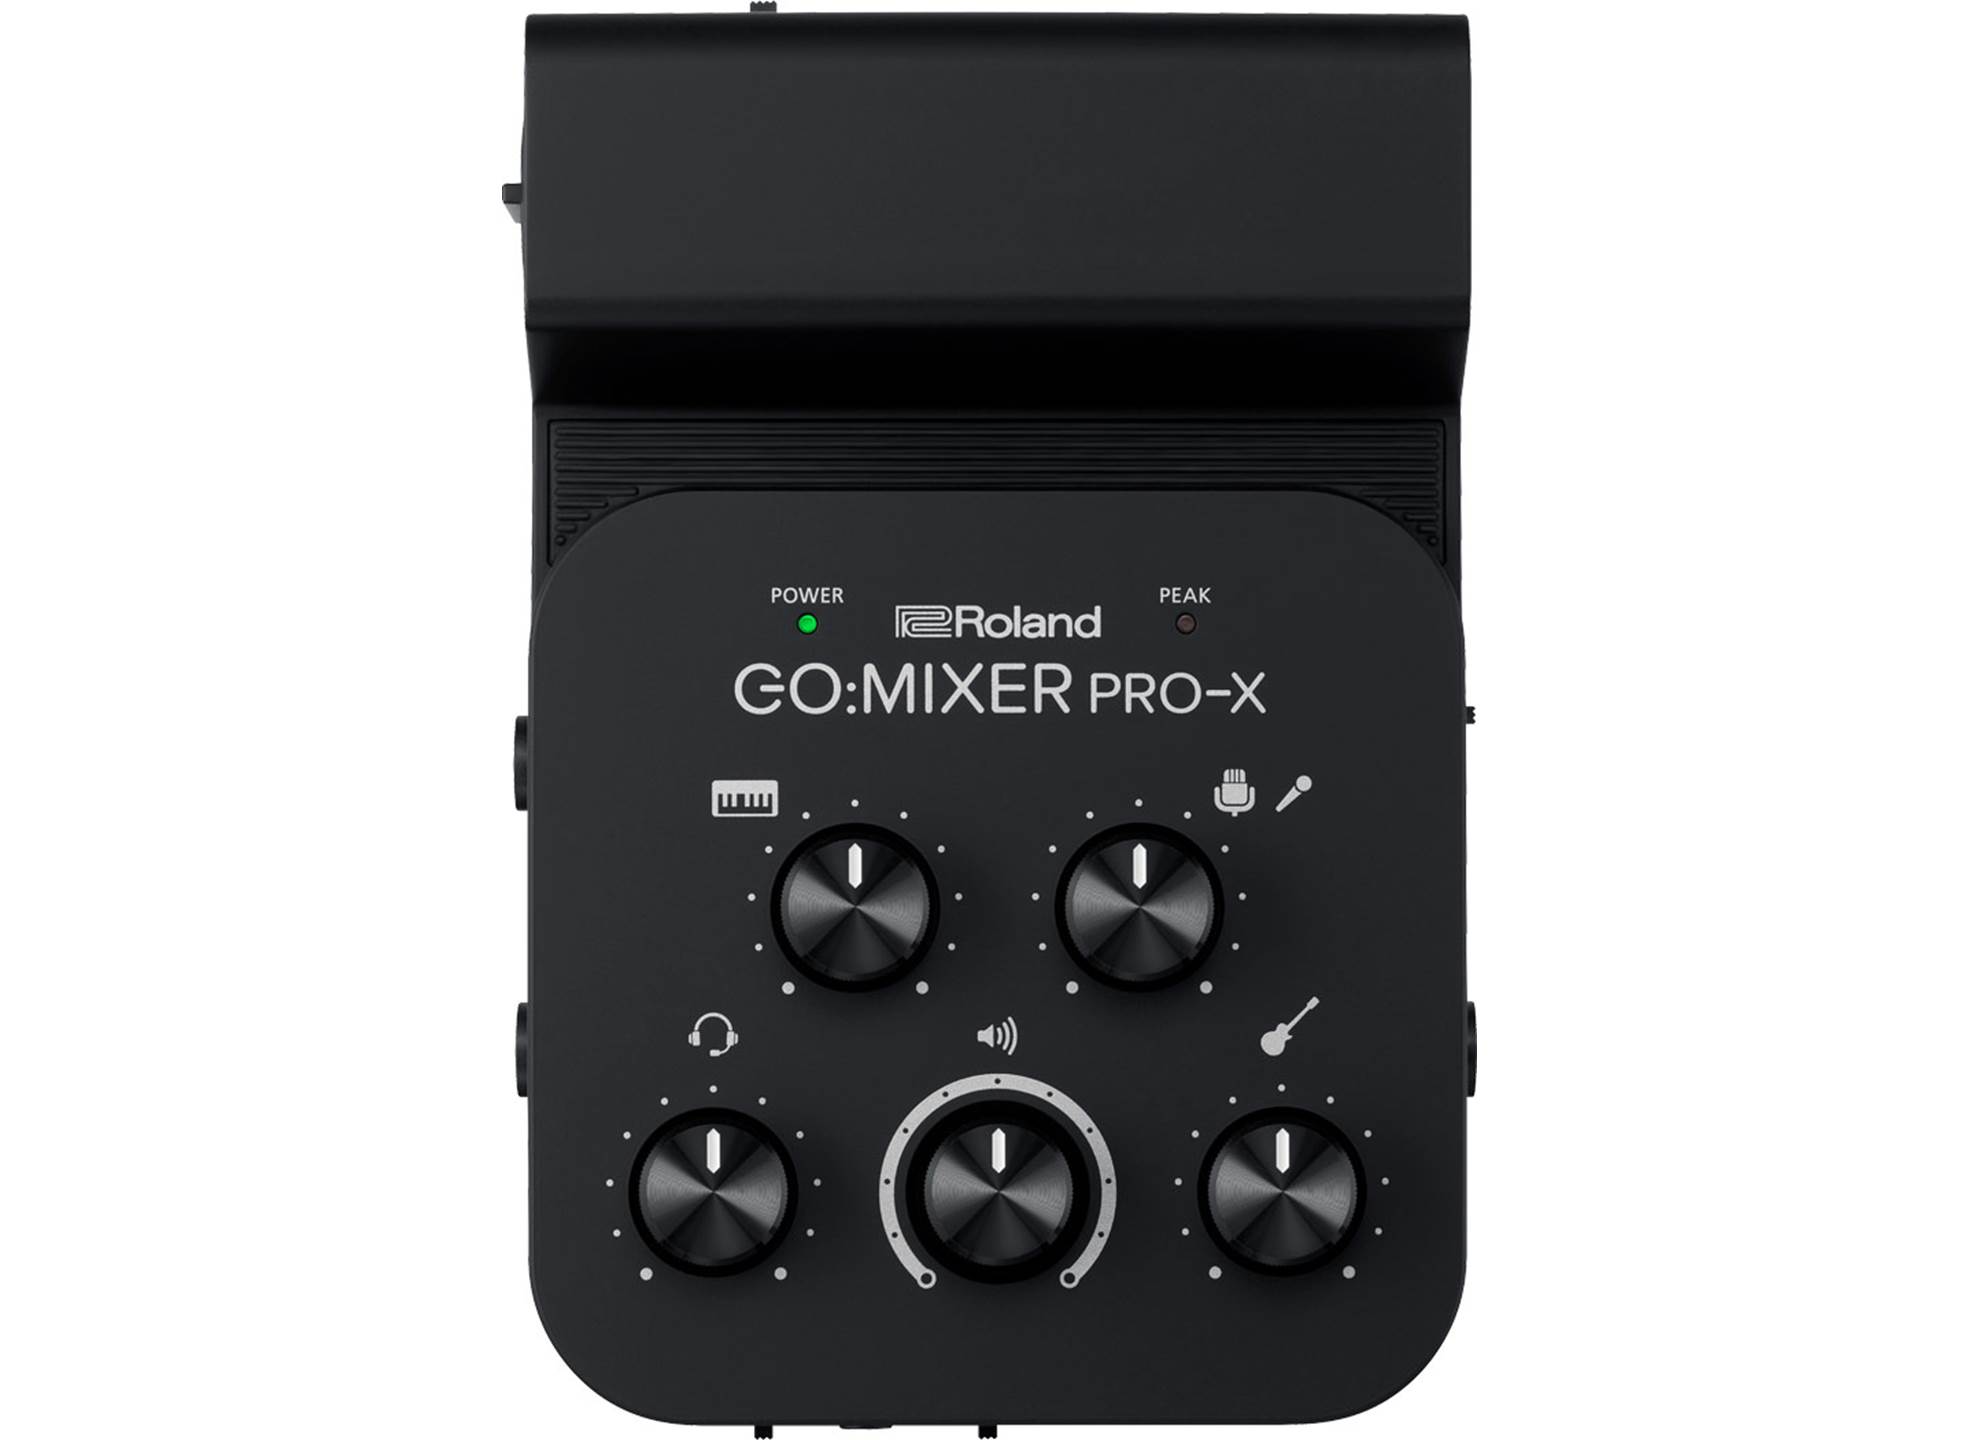 Go:Mixer Pro-X